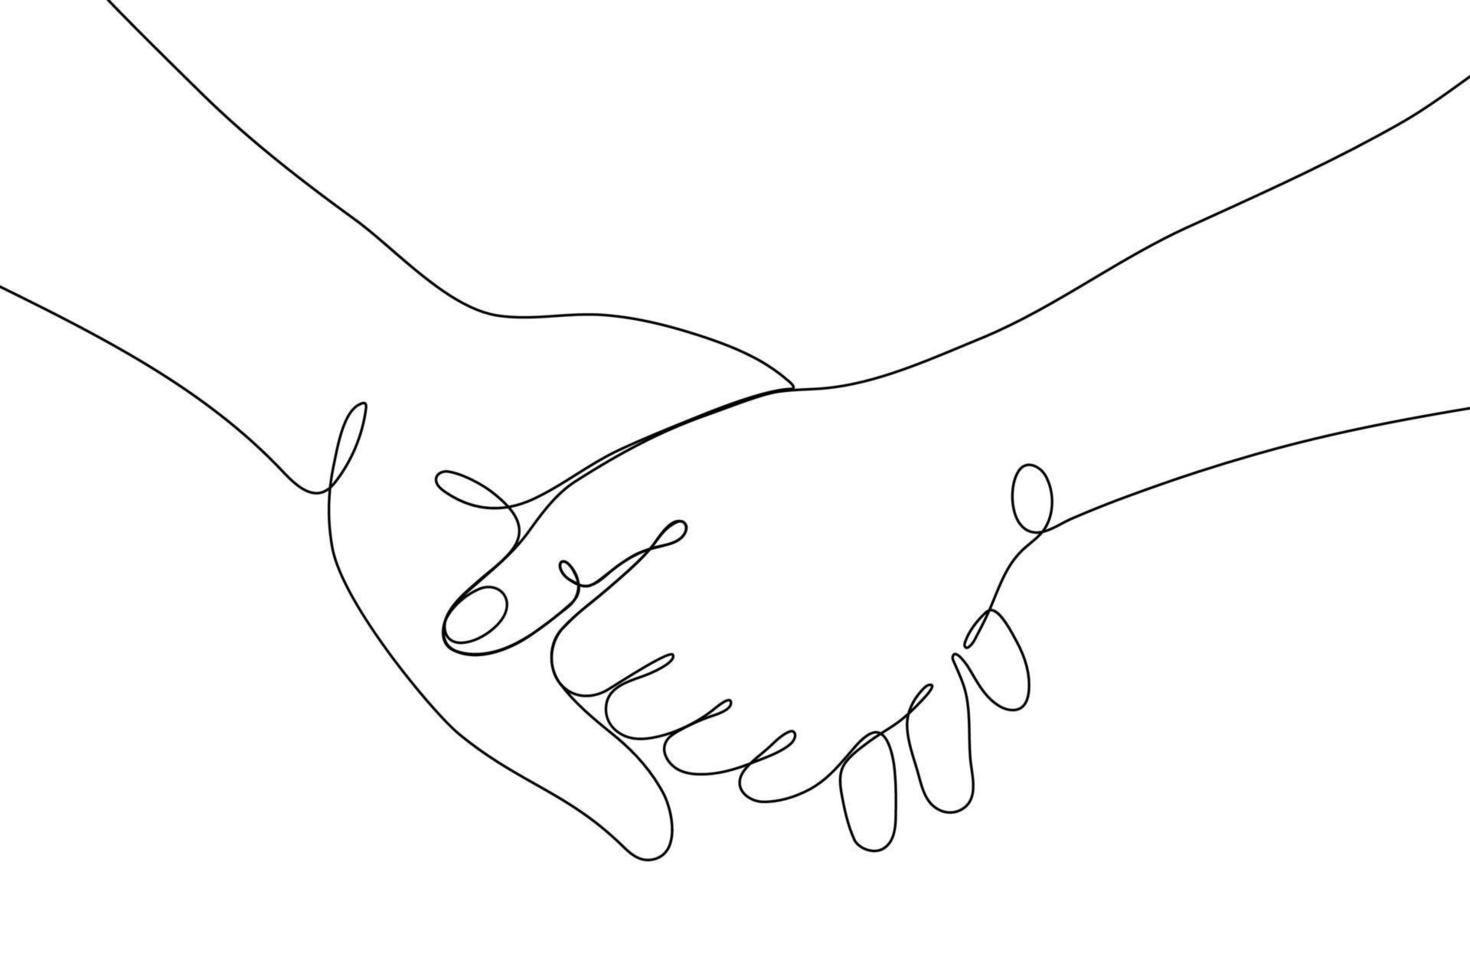 gestes de la main dessinés sur une seule ligne, mains humaines minimalistes montrant l'amour, romantique, signe de relation. conception de vecteur graphique continu dynamique à une ligne